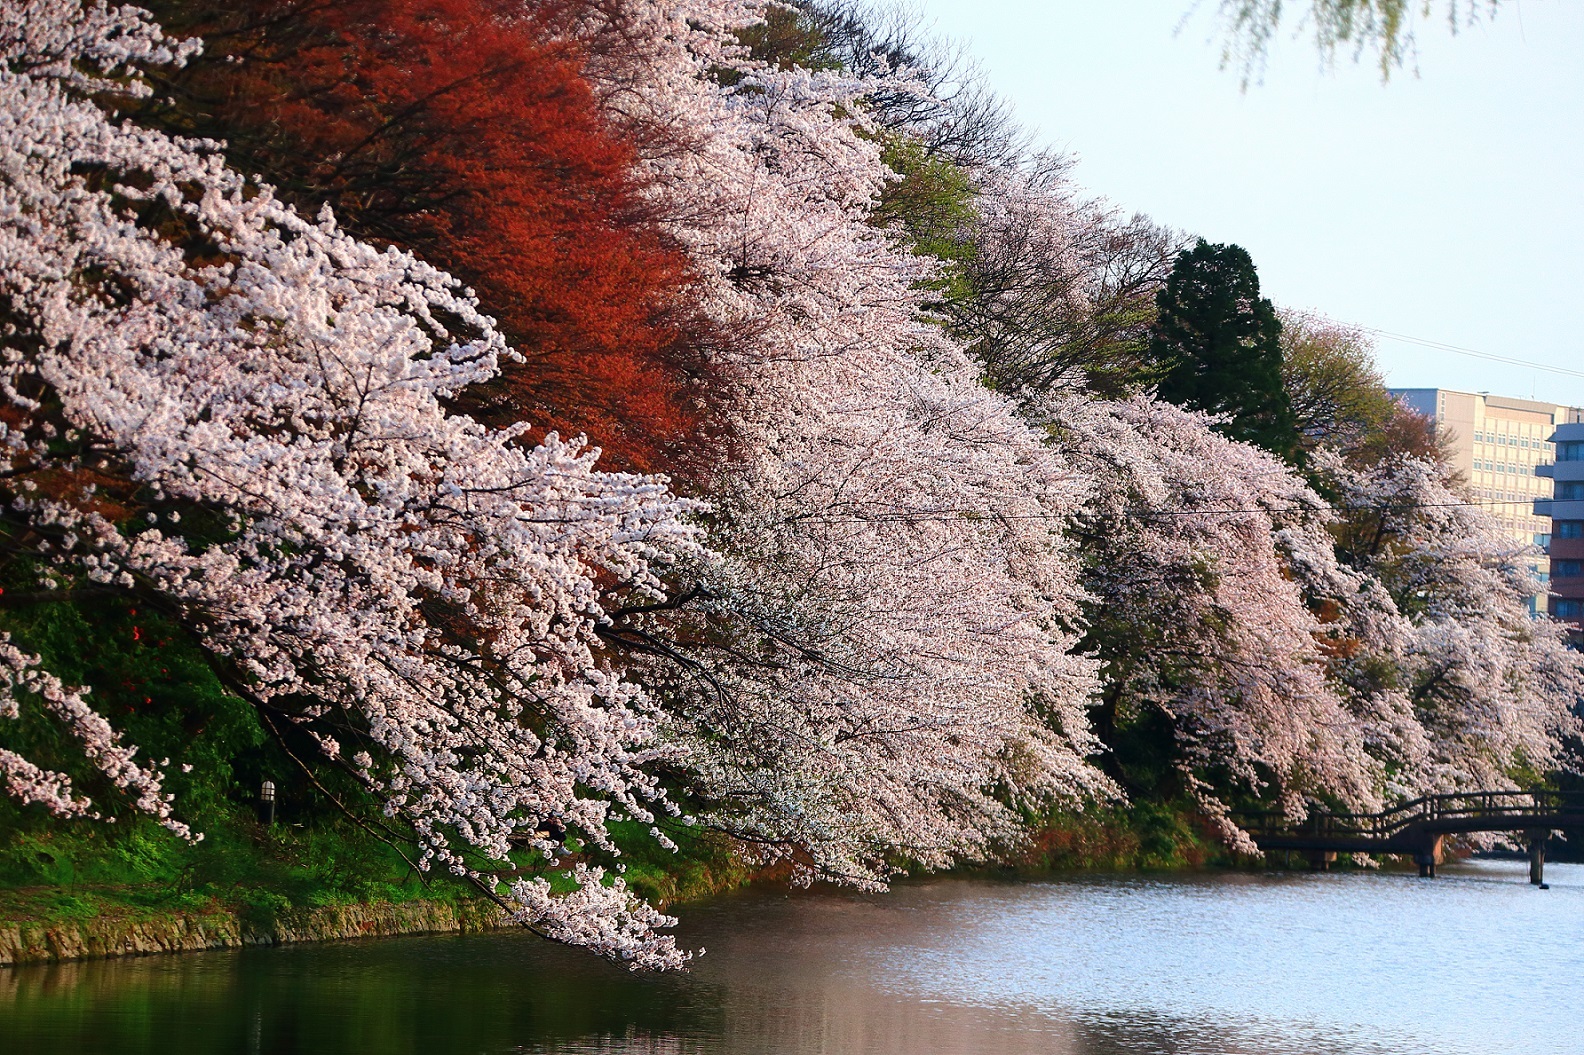 桜100選「高岡古城公園」の
傷んだ桜の木を植え替え、次世代につなぎたい
　12月25日までクラウドファンディング実施中